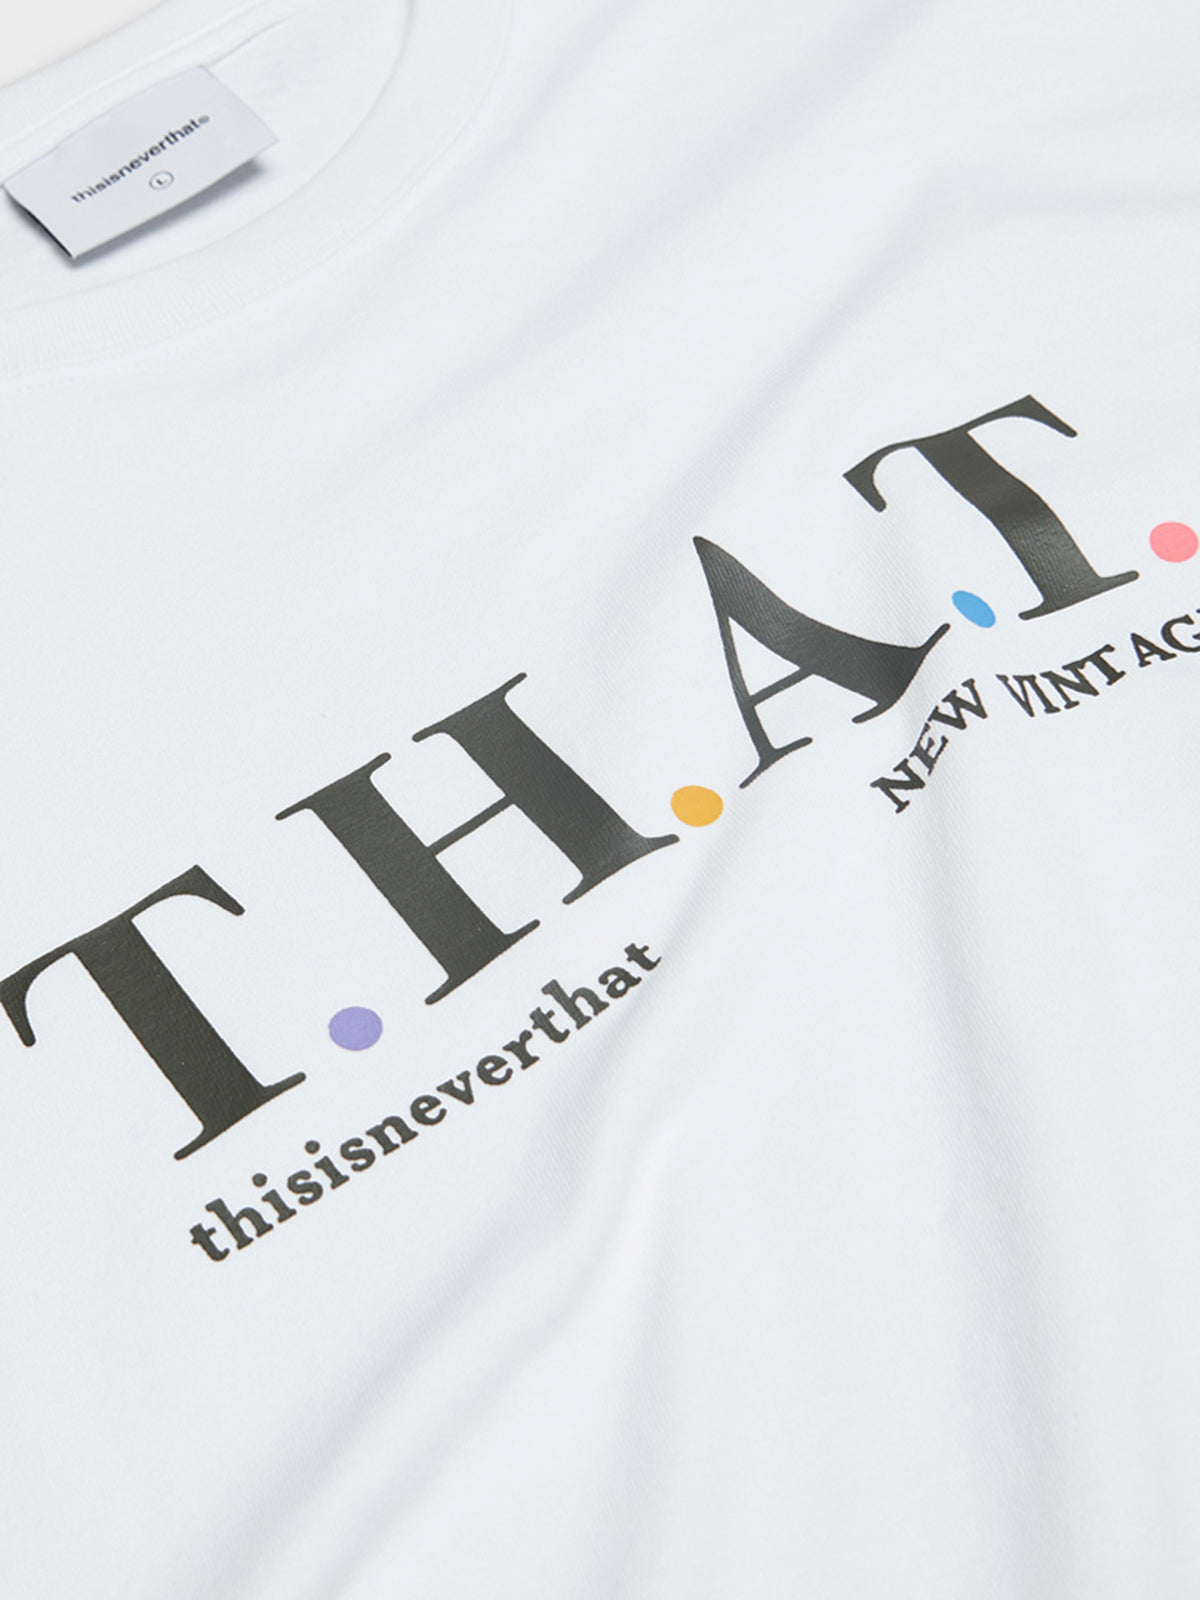 T.H.A.T T-Shirt i Hvid